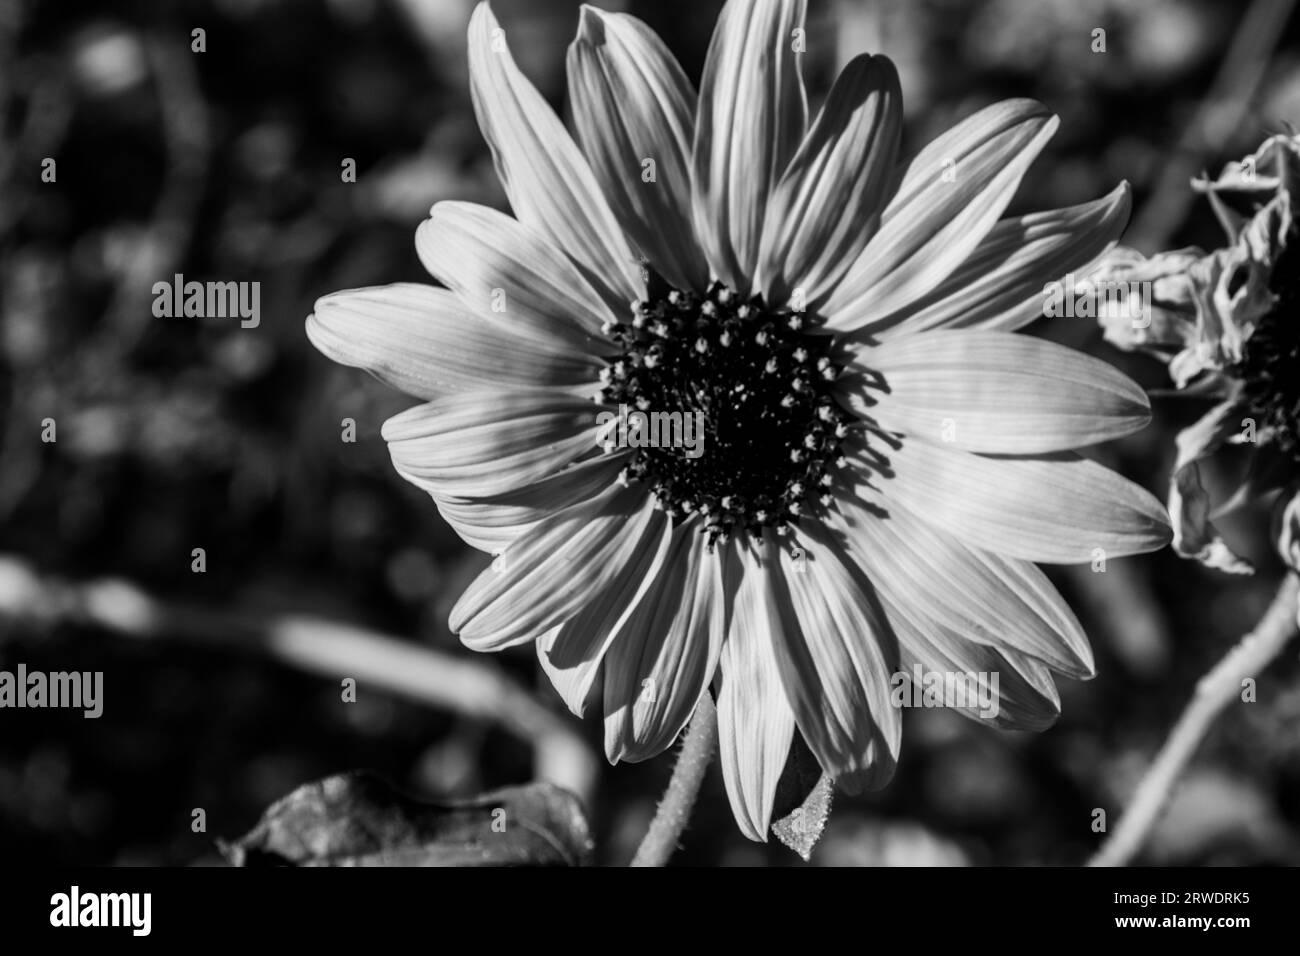 Gros plan sur un tournesol nain en fleur, avec un filtre noir et blanc. Banque D'Images